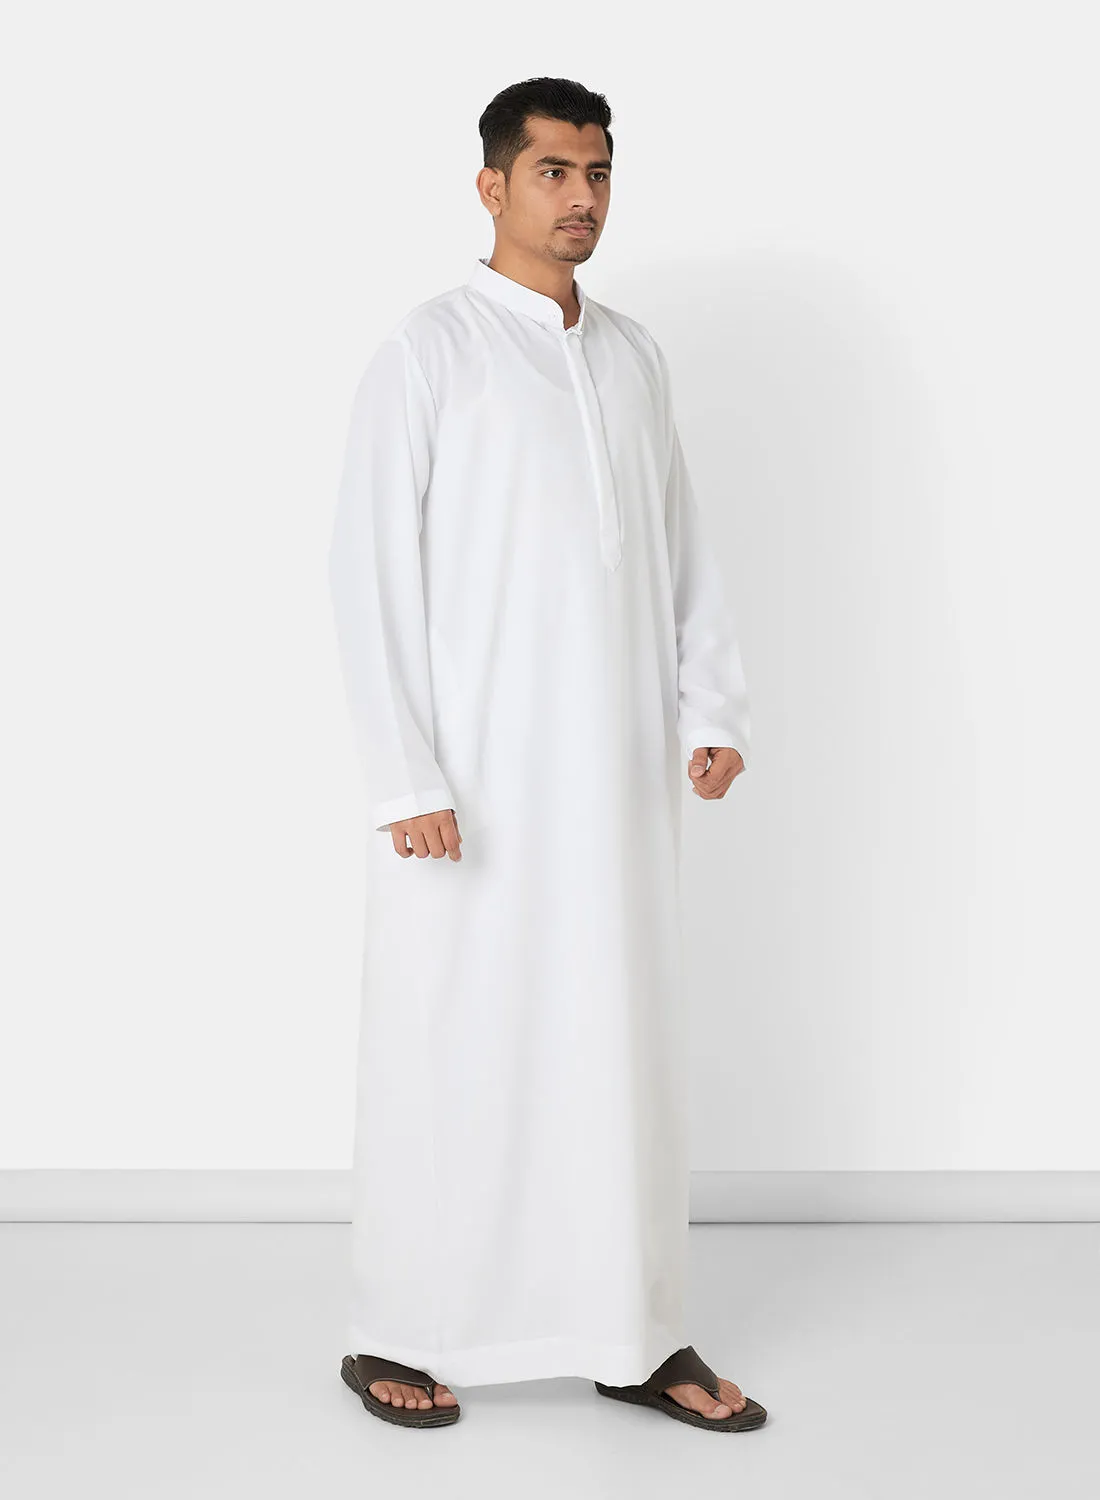 SIVVI for SAQR Premium Saudi Kandora Off-White